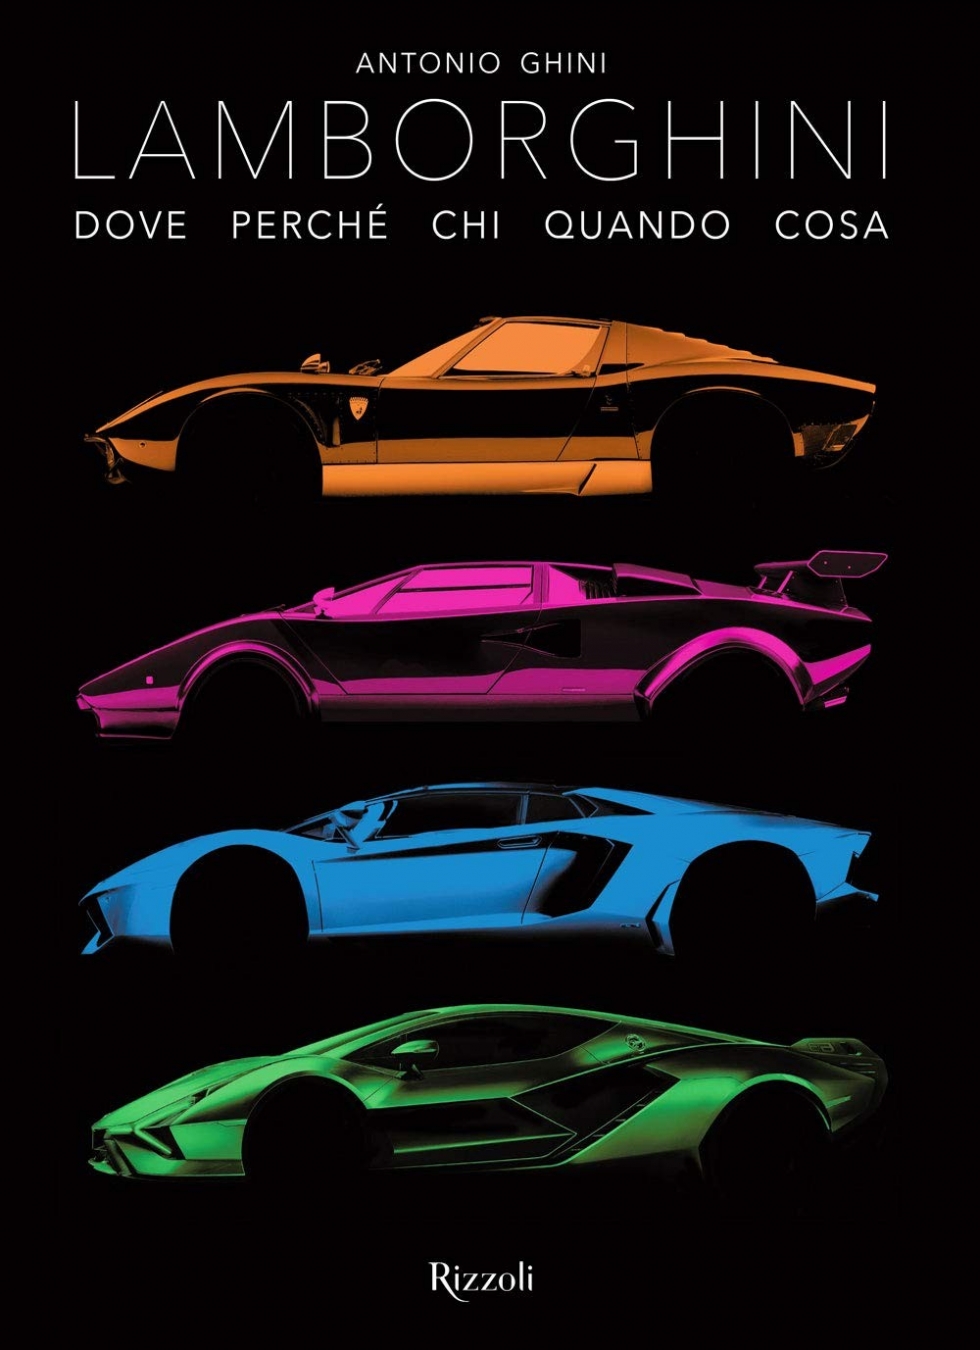 Antonio Ghini Lamborghini: Where Why Who When What 